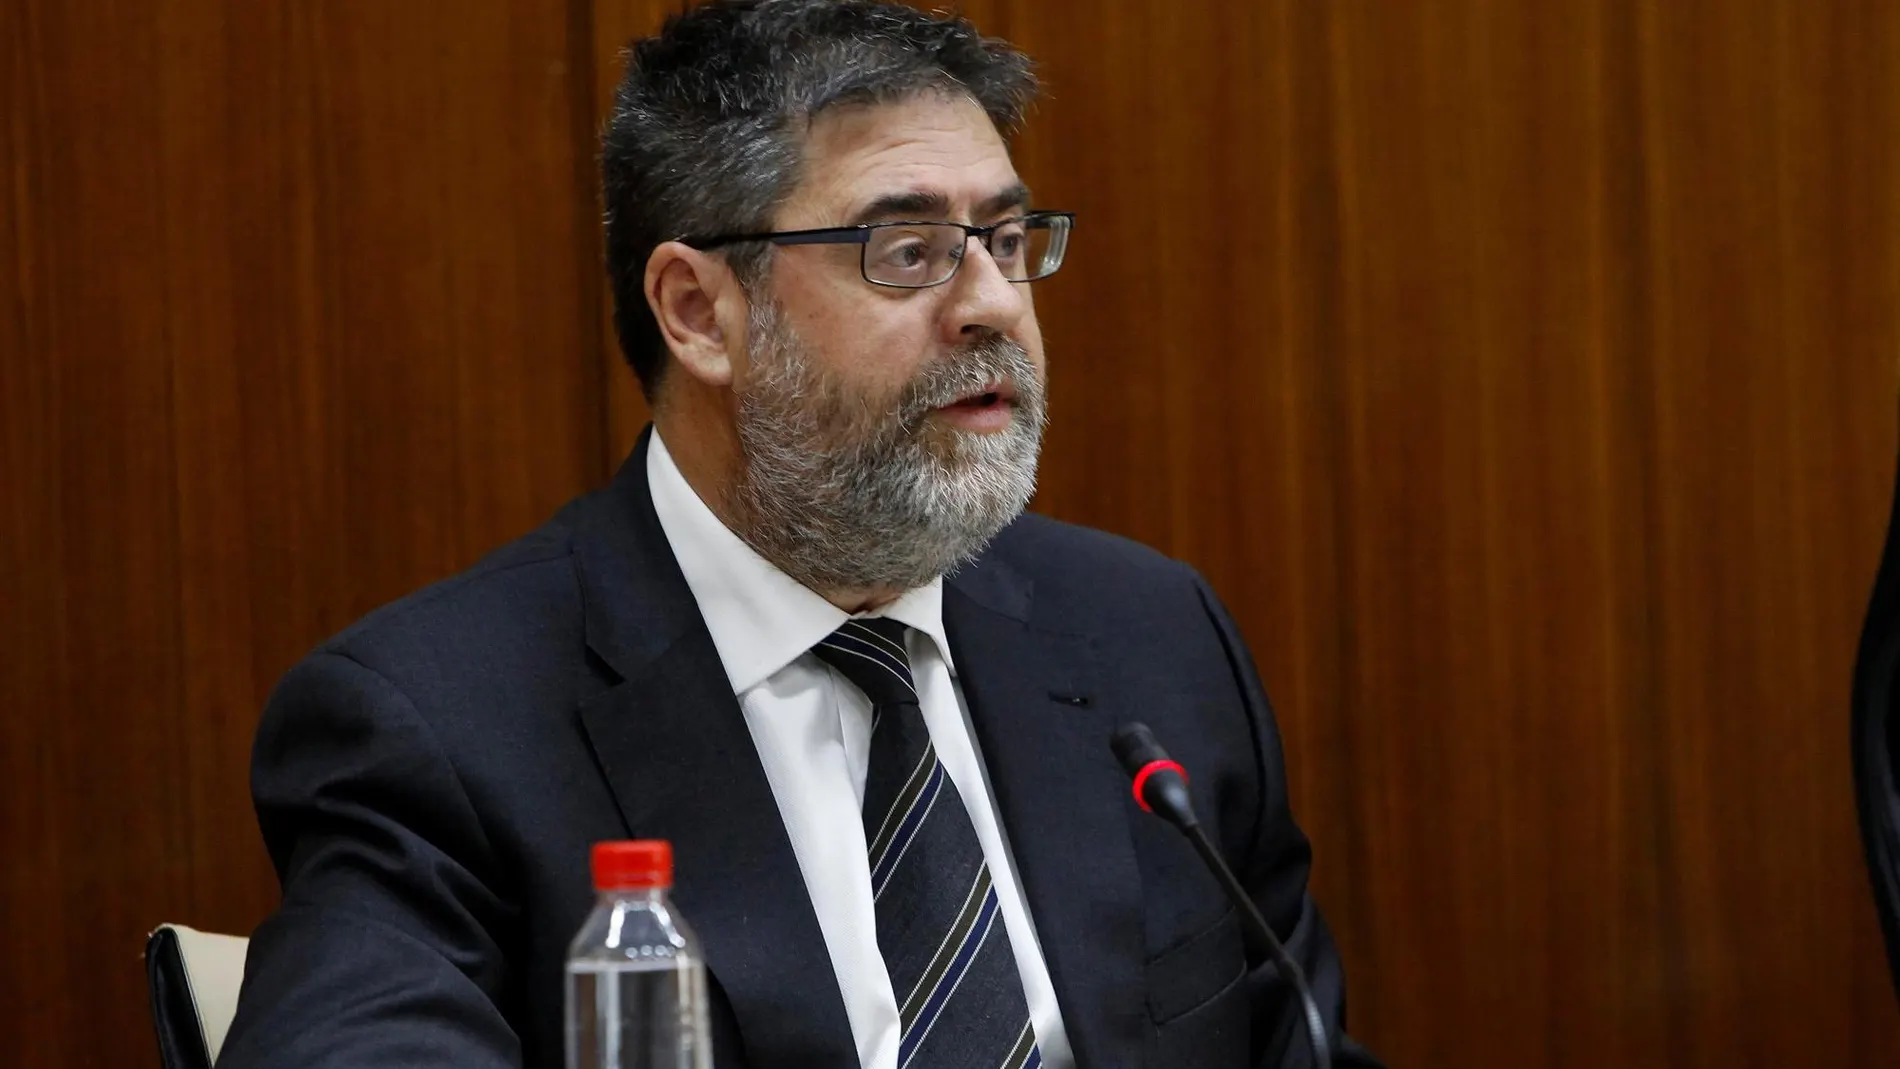 El presidente de la Cámara de Cuentas andaluzas es Antonio López, en la imagen, en una comisión del Parlamento autonómico (Foto: Manuel Olmedo)